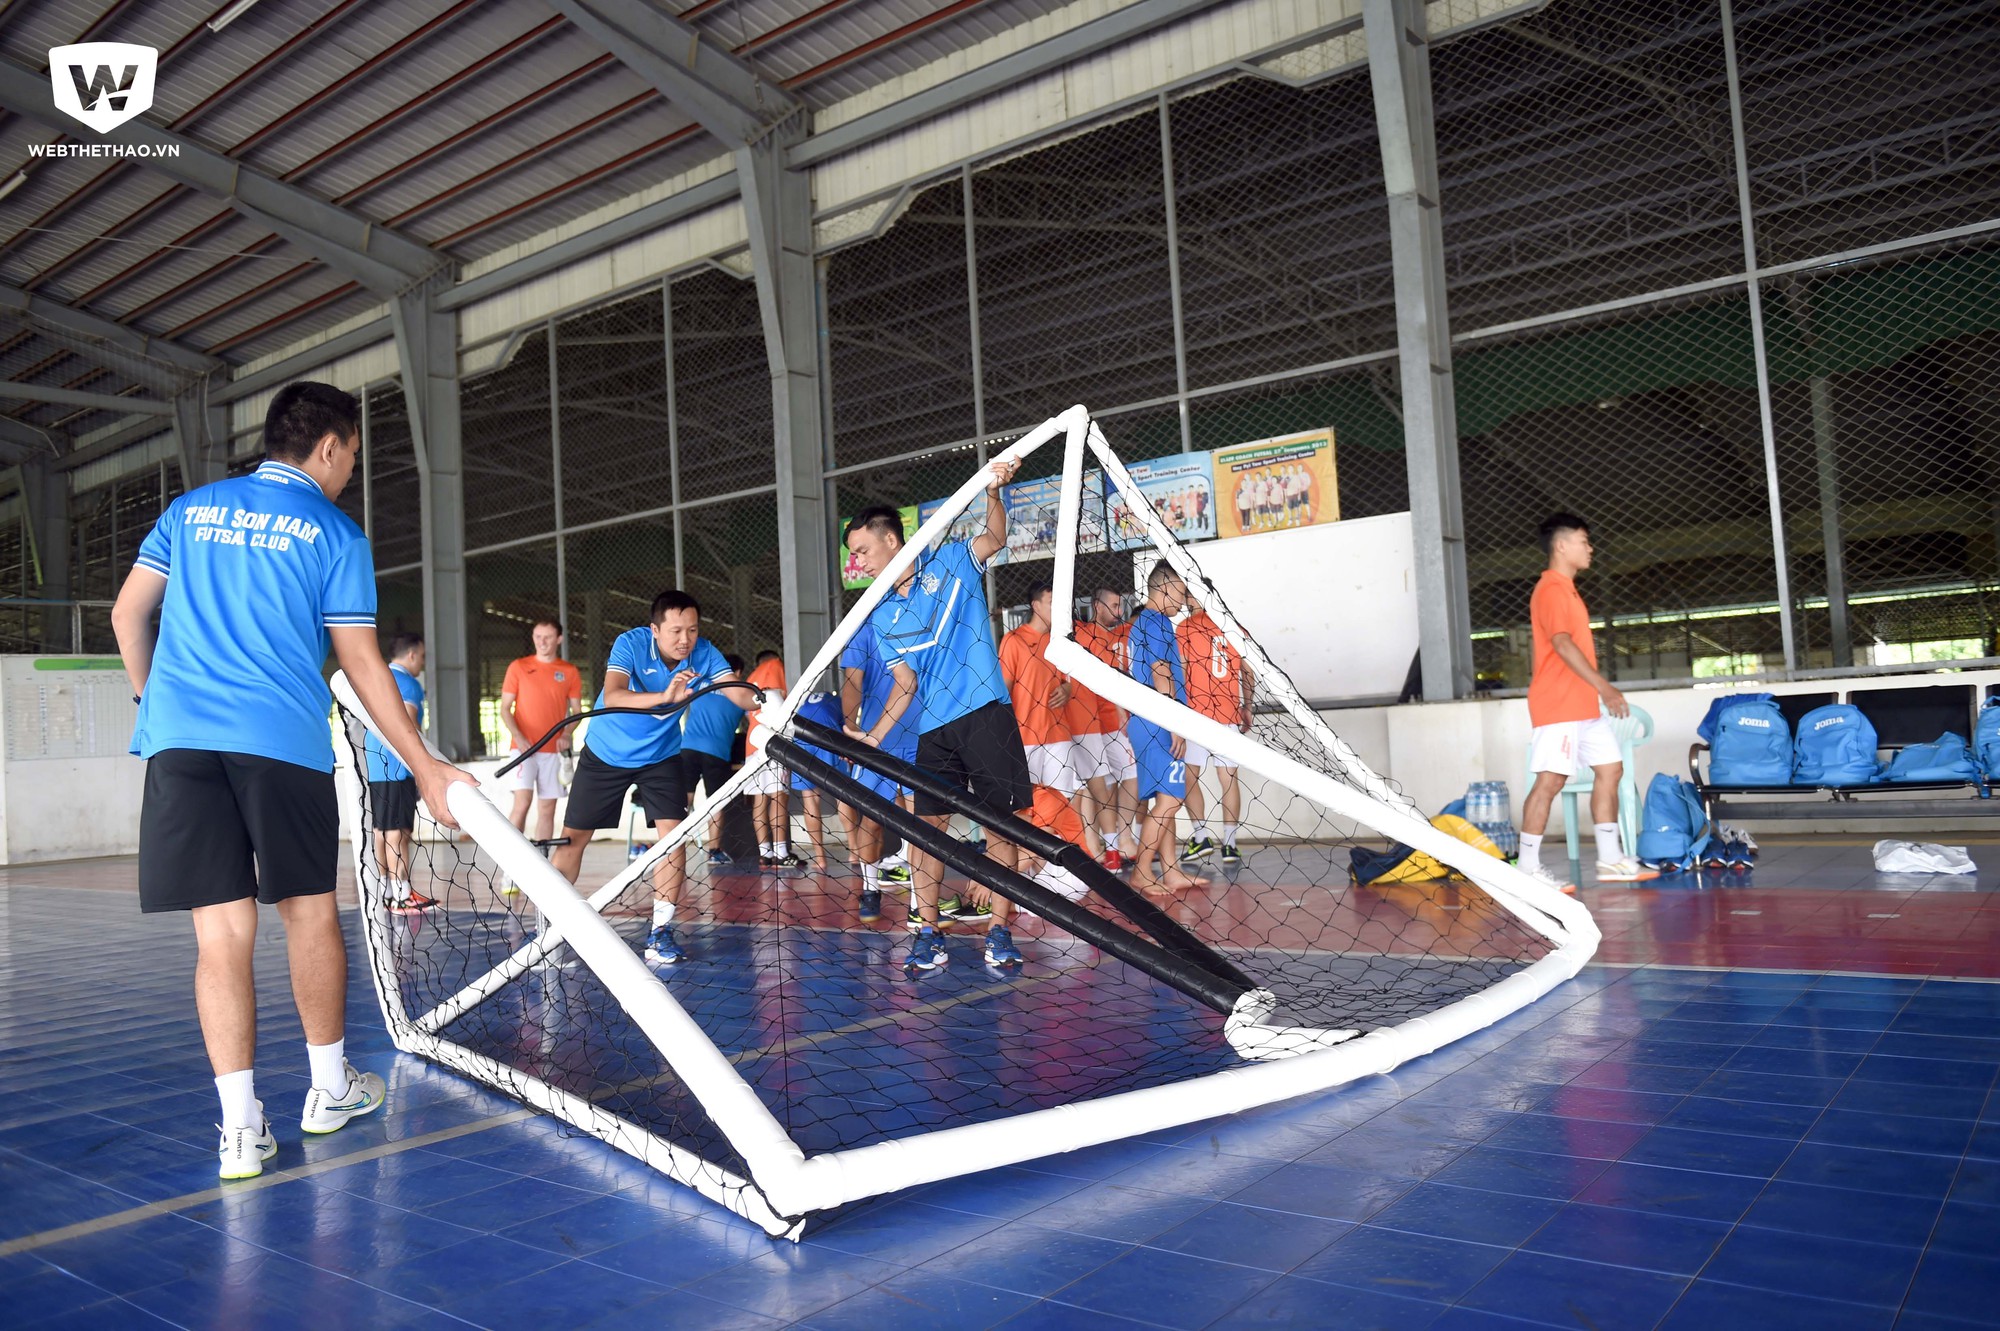 Tại giải đấu lần này, CLB Futsal Thái Sơn Nam đã mang sang Myanmar một số thiết bị luyện tập tiêu chuẩn mà cụ thể là khung thành bơm hơi của đội